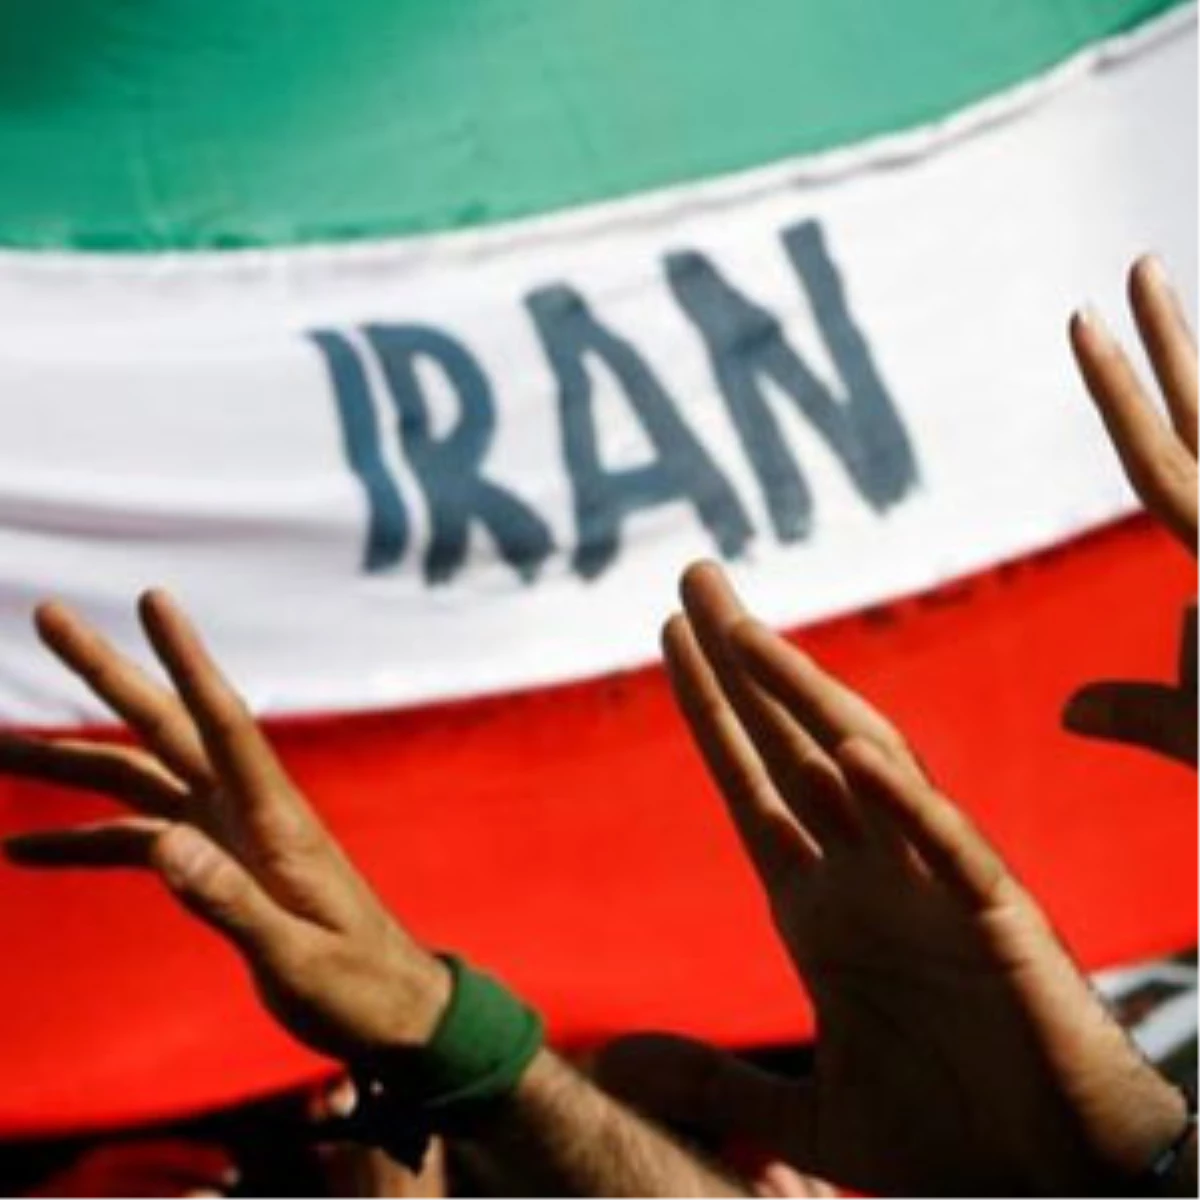 İran, CIA Adına Çalıştığı İddia Edilen ABD Vatandaşını İdam Cezasına Çarptırdı